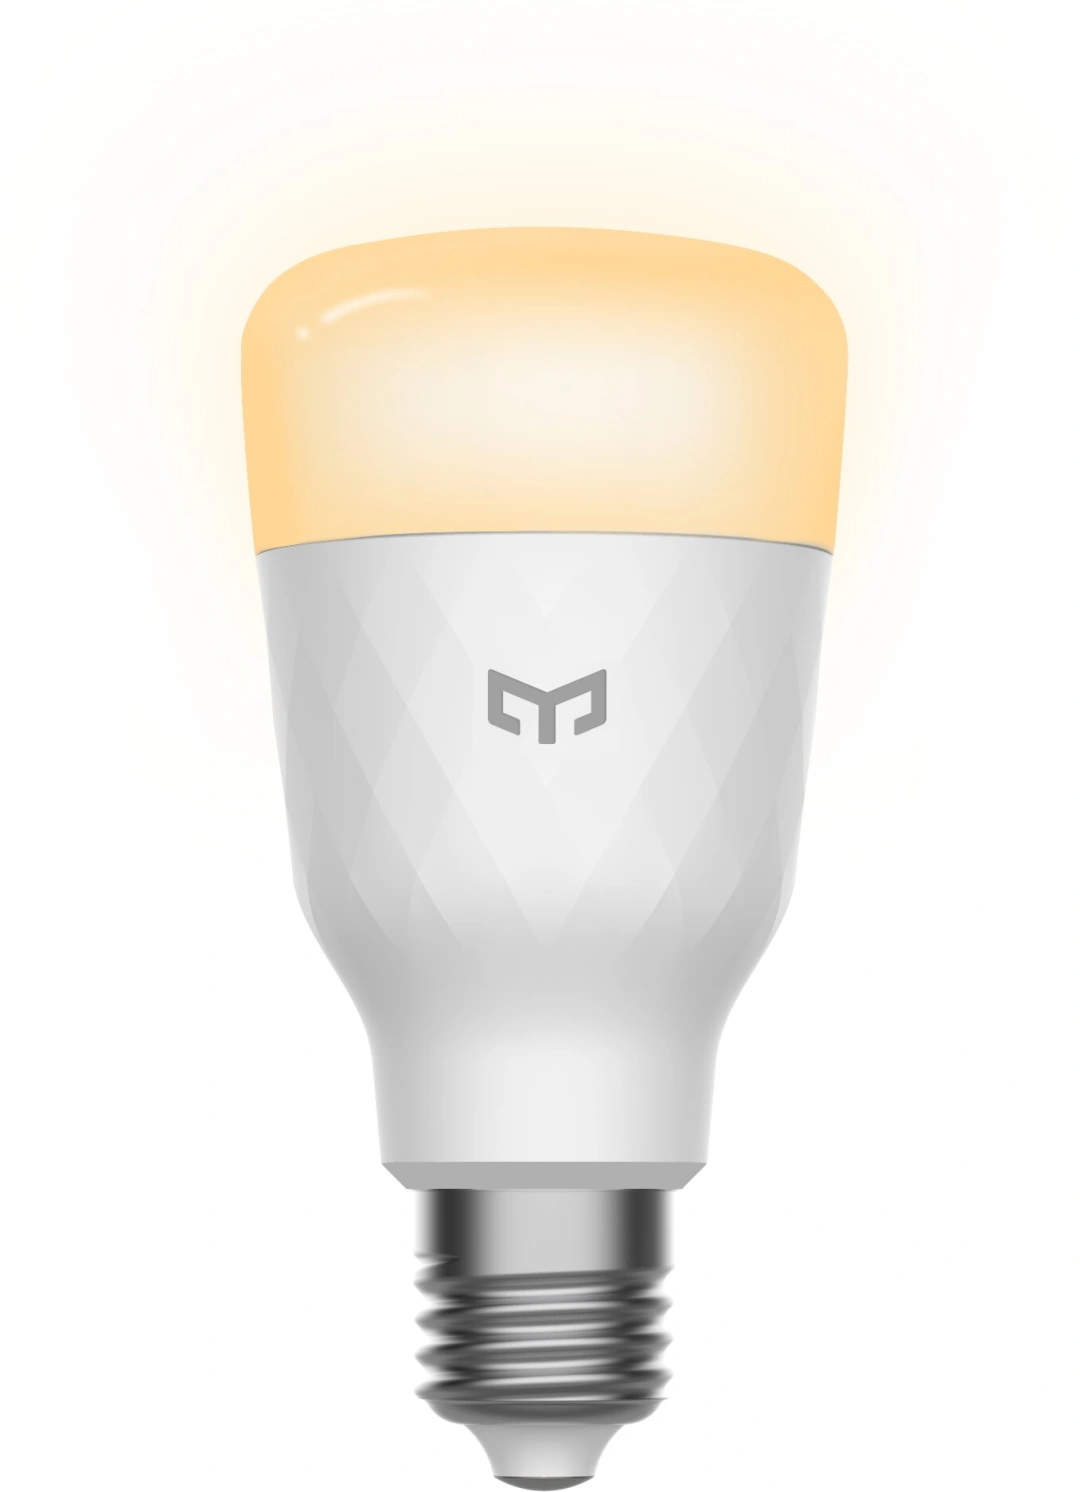 Xiaomi Yeelight LED Smart Bulb W3 (dimmable)